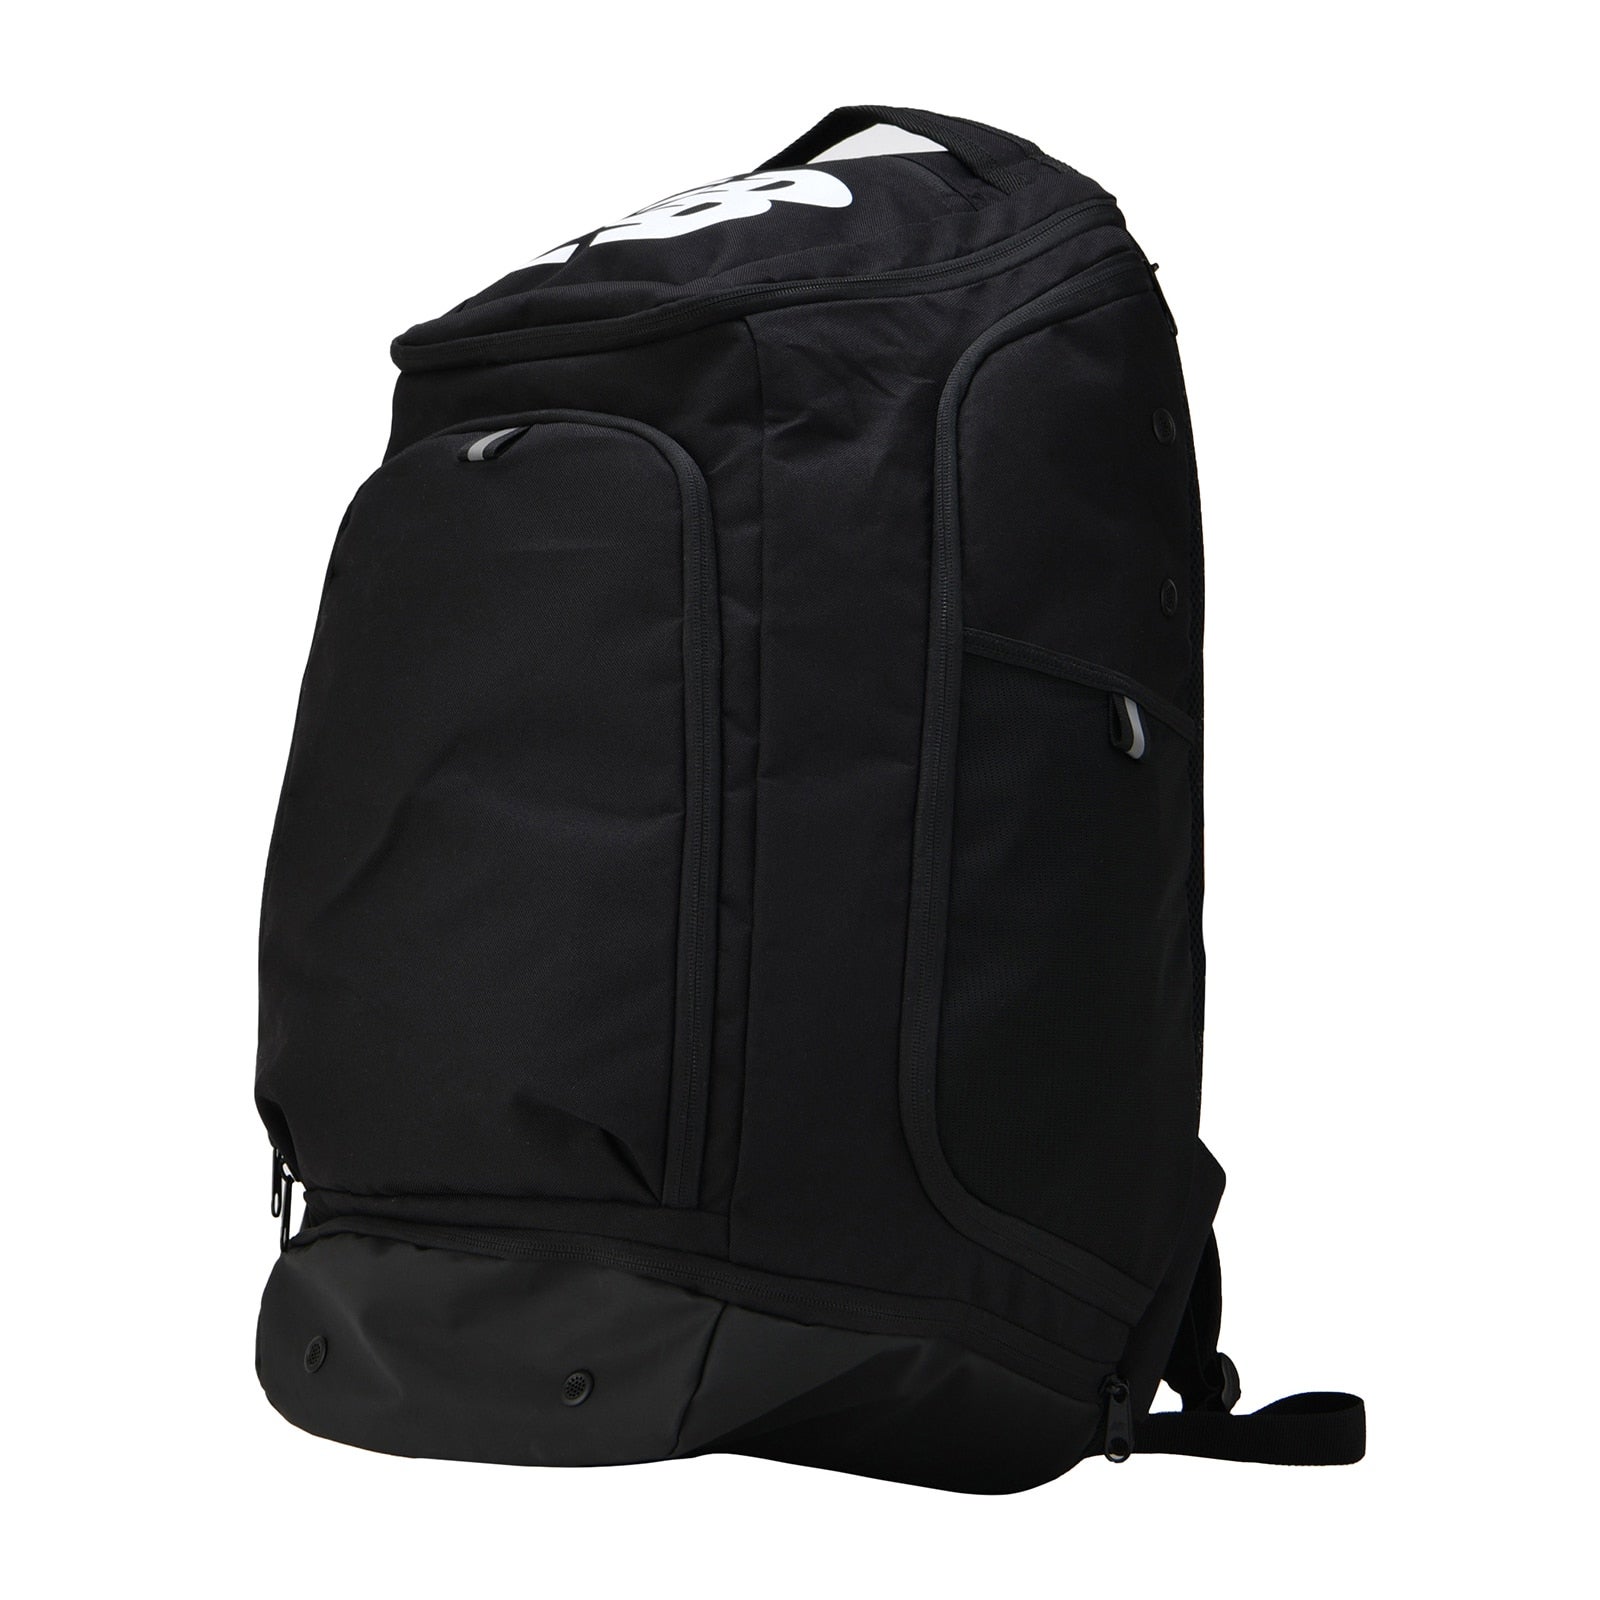 Team Travel Backpack 51L